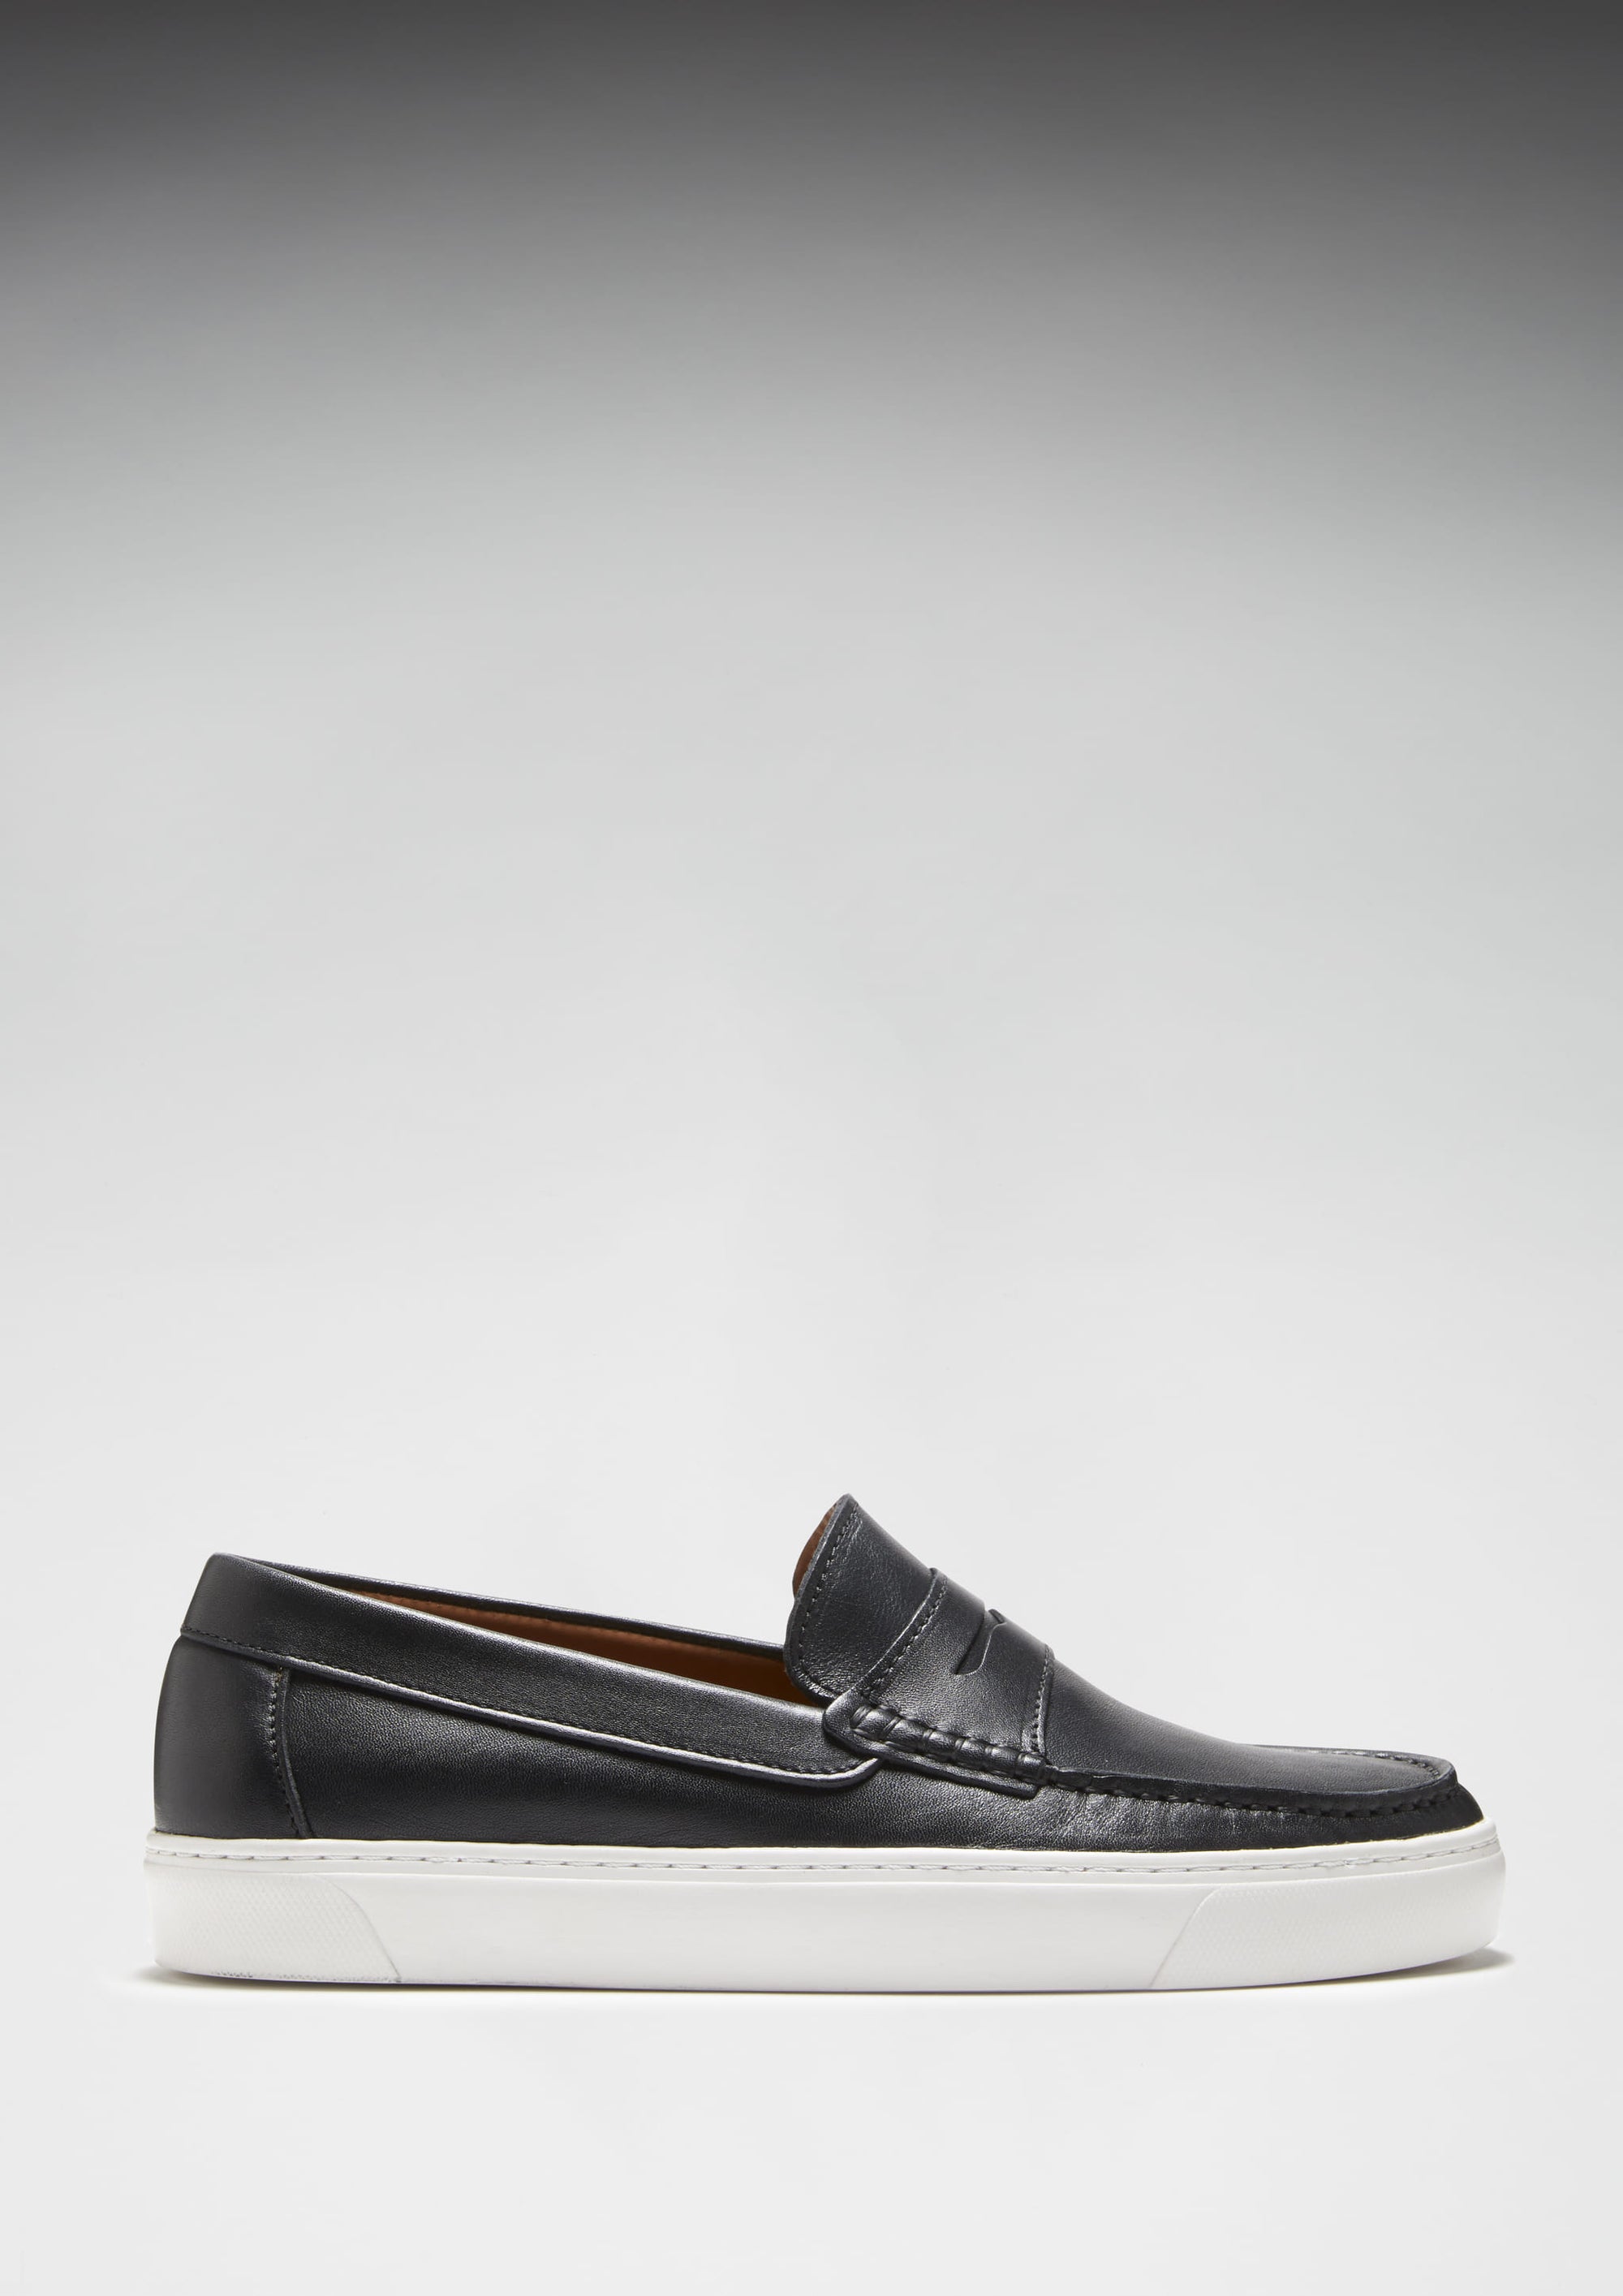 Slip-on Sneaker Loafers, black leather - Hugs & Co.